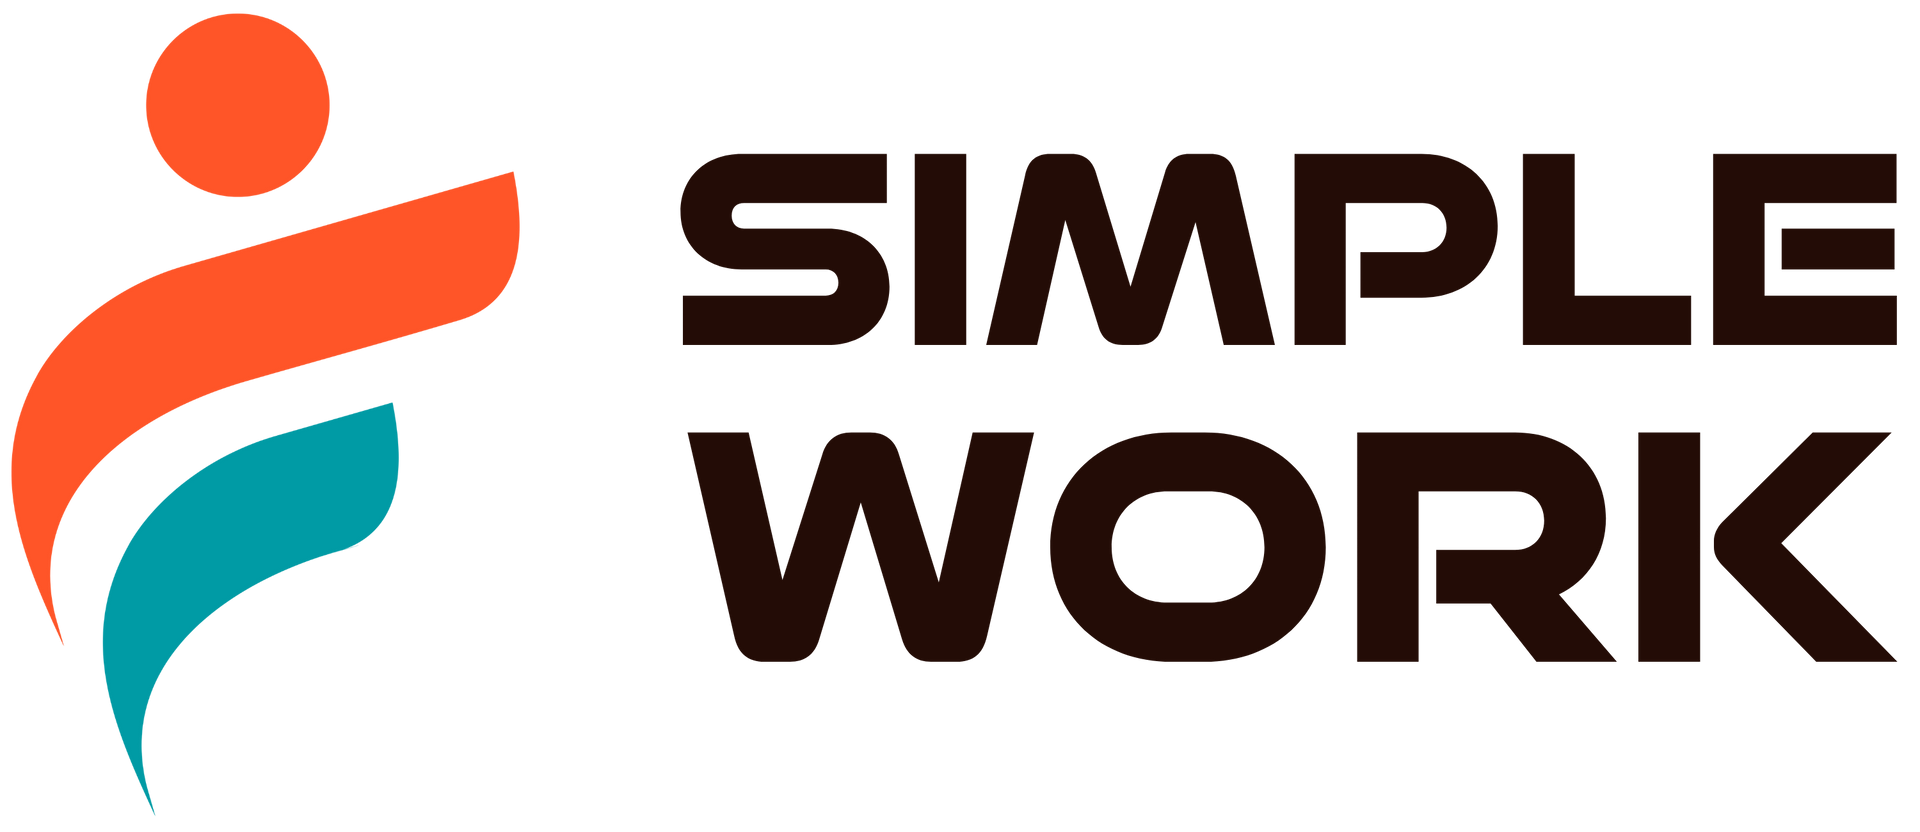 Een logo voor eenvoudig werk met een persoon in het midden.